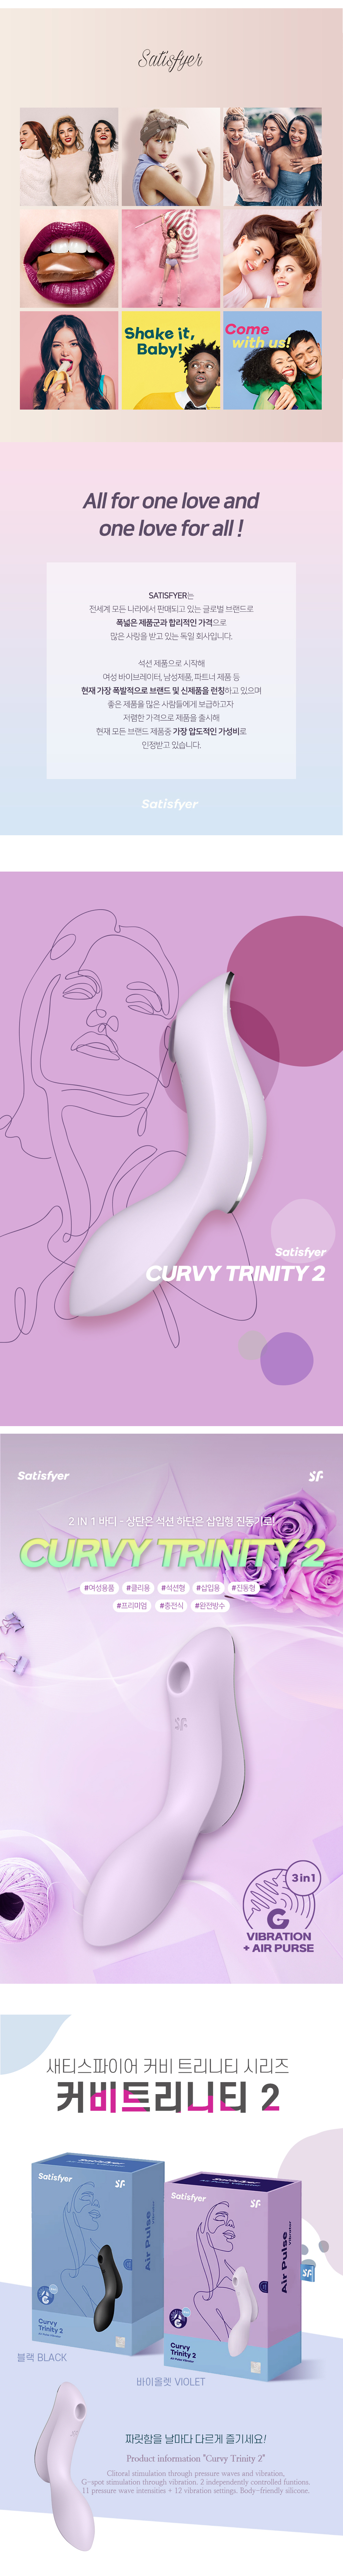 SATISFYER CURVY TRINITY 2 (2 COLOR)